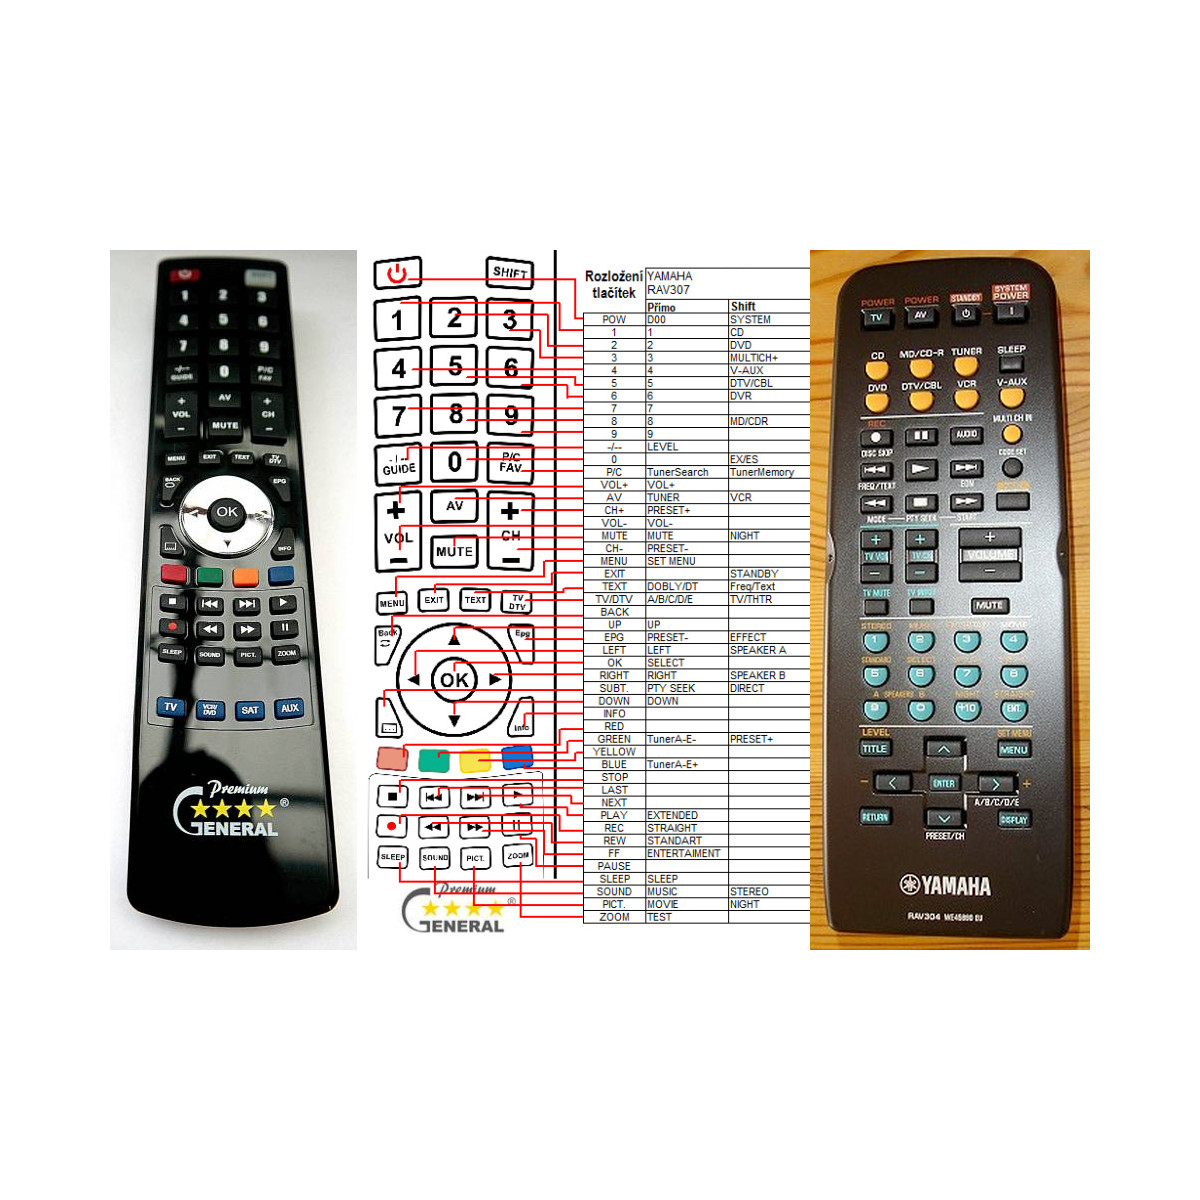 More about YAMAHA RAV307, WG50290 EX plus ovládání TV (mini TV) - dálkový ovladač duplikát kompatibilní